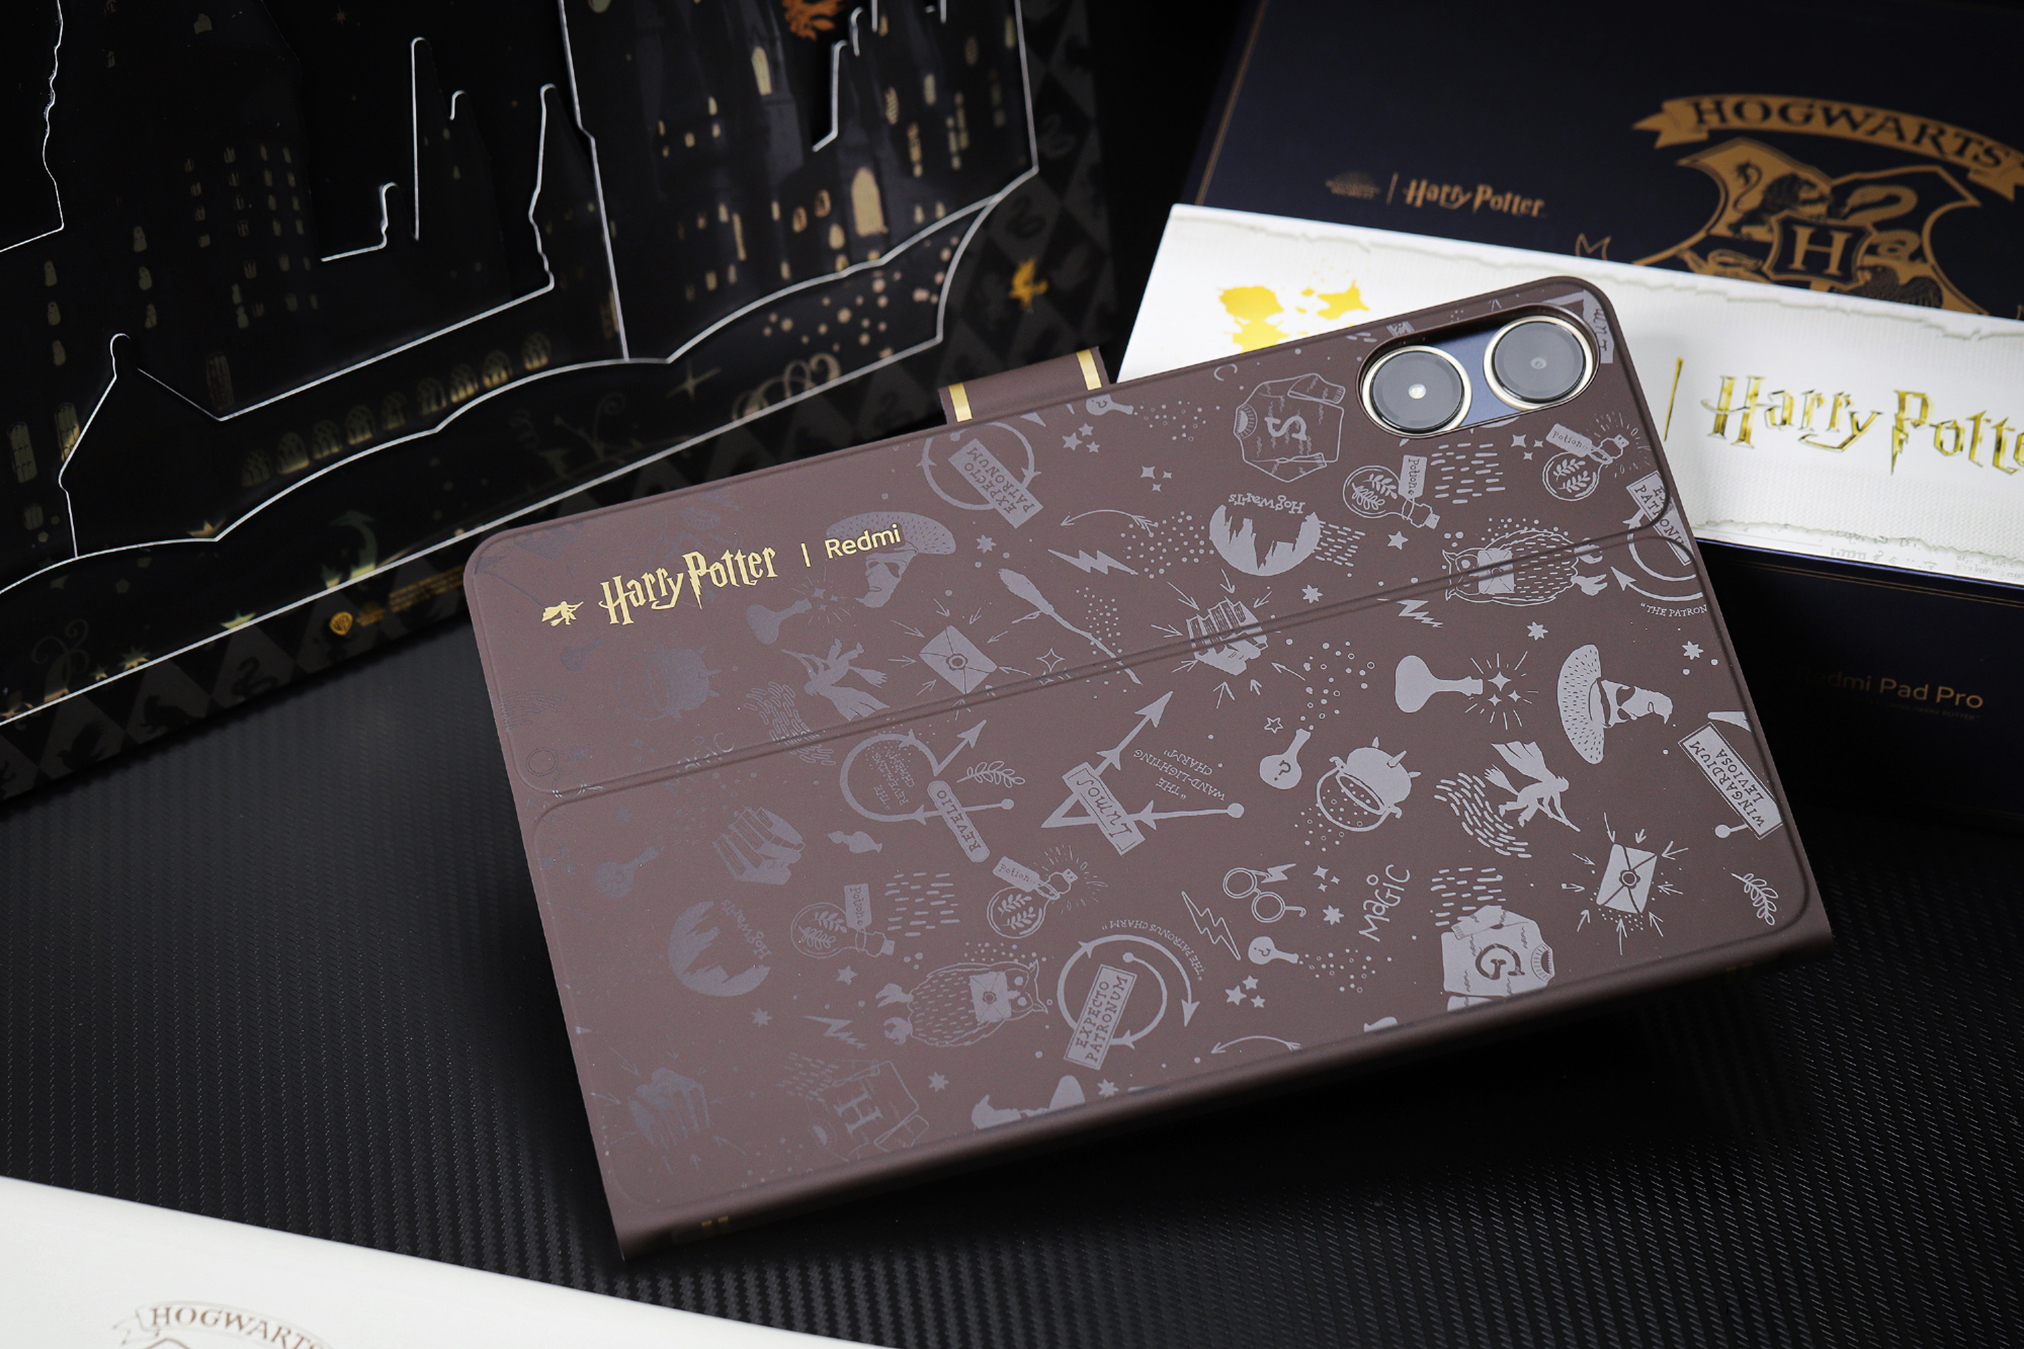 Cận cảnh máy tính bảng 12 inch giá rẻ chỉ 5 triệu đồng của Xiaomi: Thiết kế đẹp như iPad, có cả bản Harry Potter đặc biệt cho các Potterheads, pin khủng 10.000mAh- Ảnh 23.